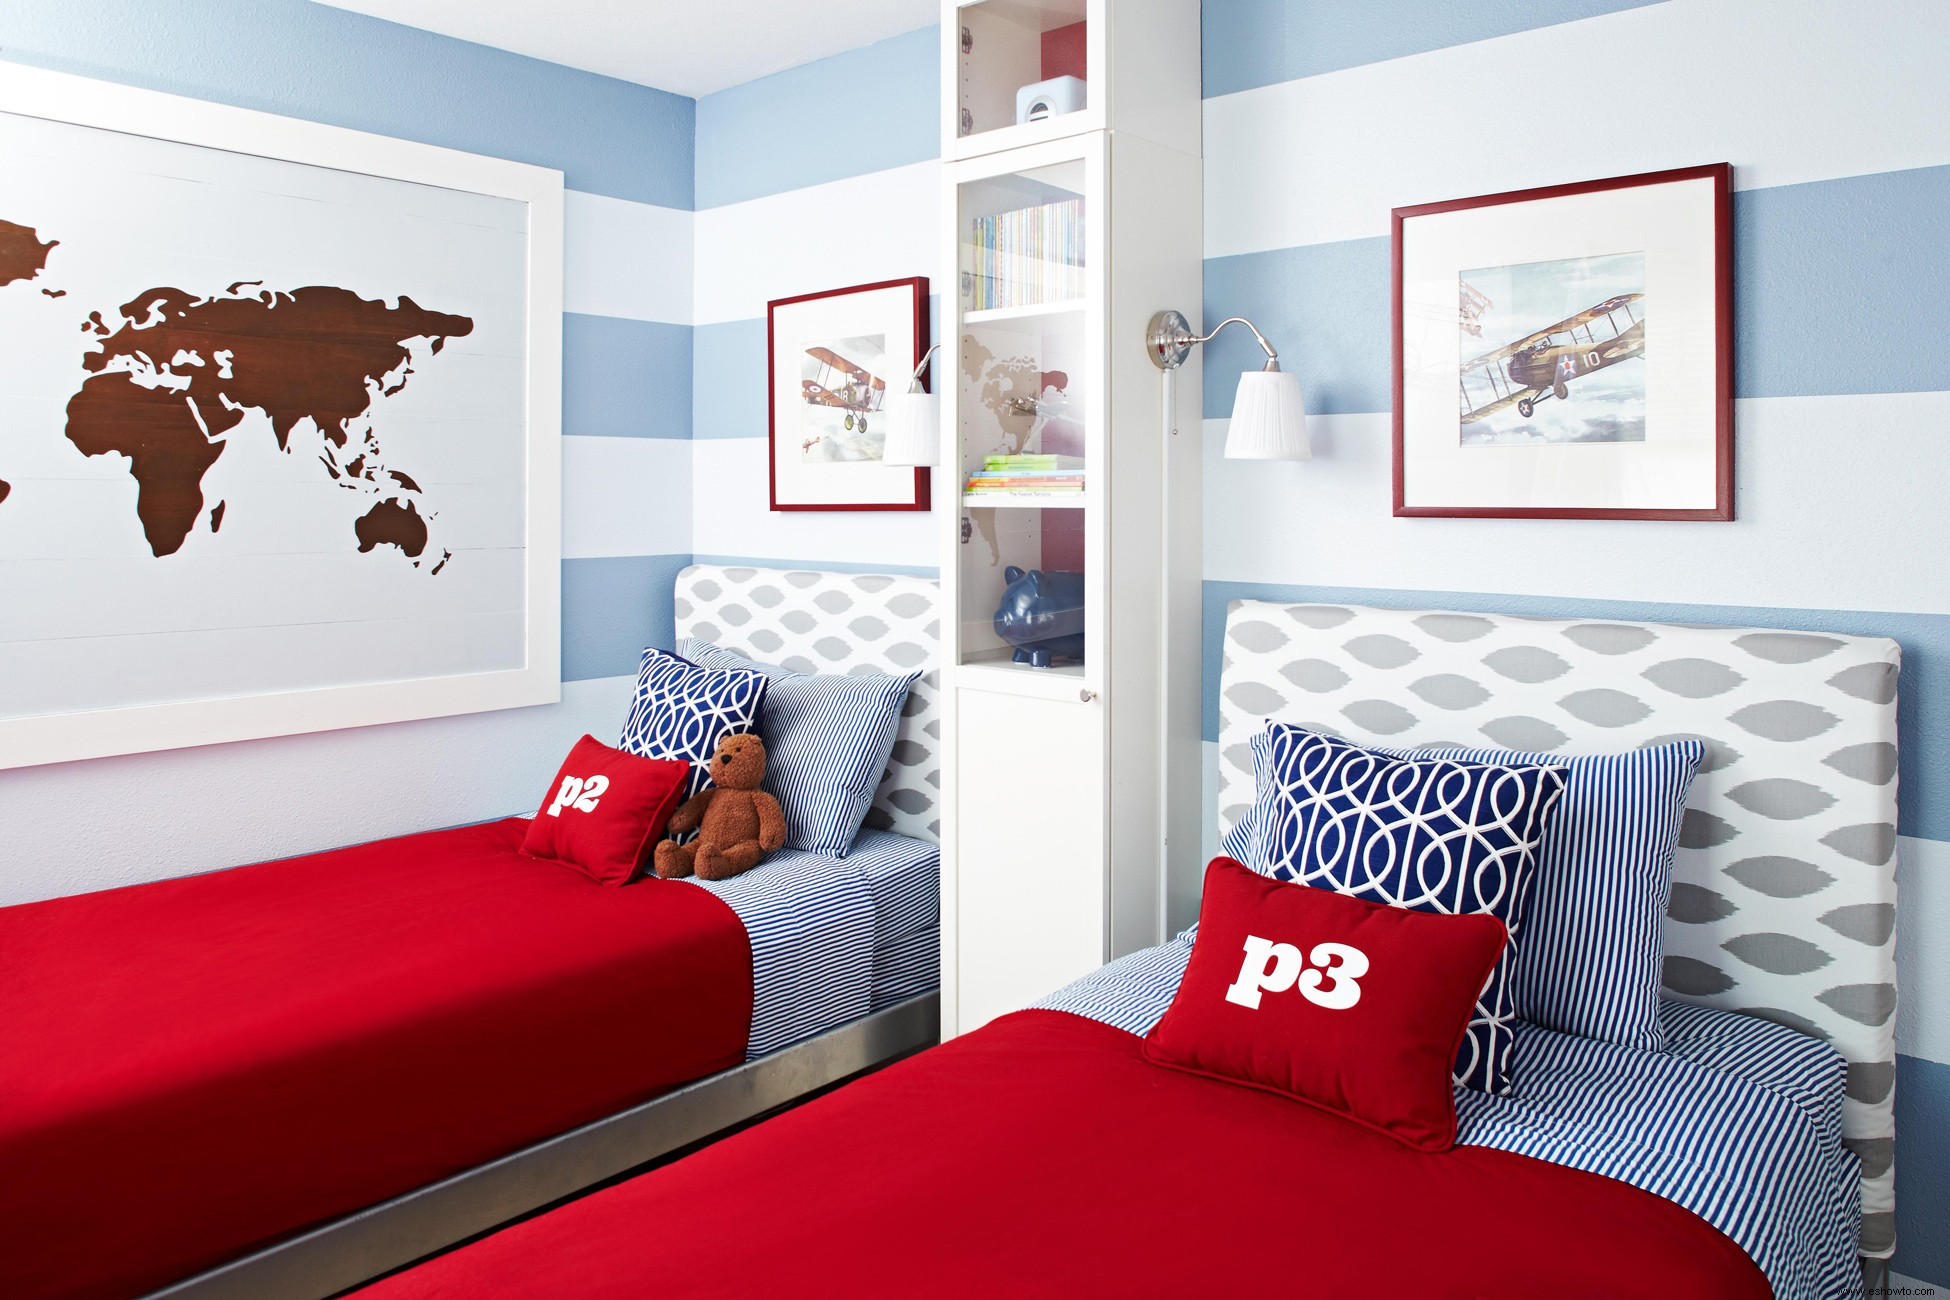 Estas ideas de dormitorios compartidos para habitaciones pequeñas duplican el almacenamiento y el estilo 